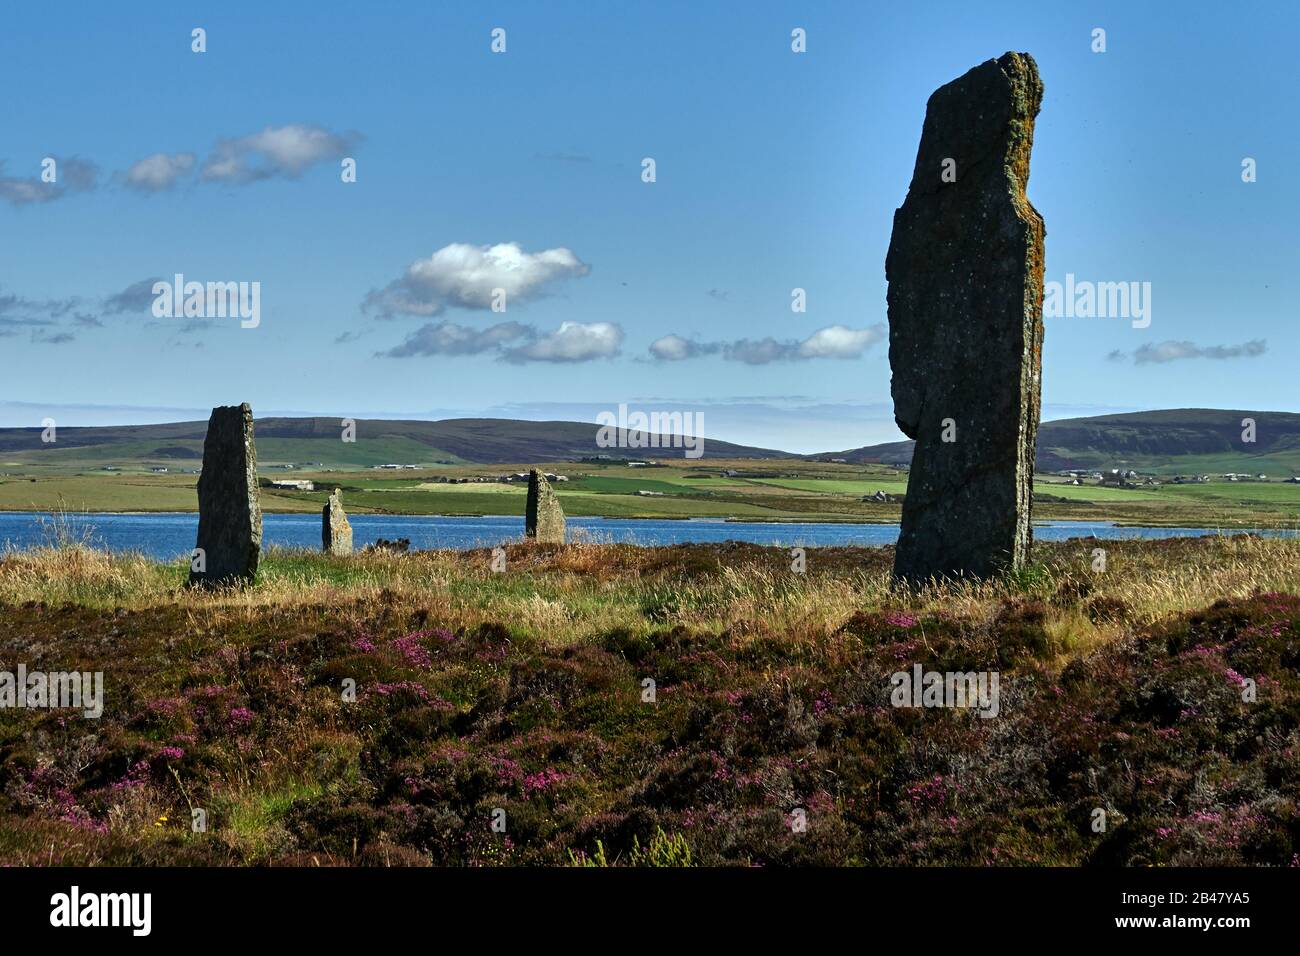 Royaume-Uni, Écosse, Orkney Islands est un archipel dans les îles du Nord de l'Écosse, dans l'océan Atlantique, il a d'anciennes pierres de l'anneau de Brodgar dans les îles Orkney au large de la côte nord de l'Écosse. Ce monument au coeur du site du patrimoine mondial de l'Orkney néolithique aurait été construit entre 4000 et 4500 ans auparavant. Construit à l'origine avec soixante pierres dans un cercle de plus de 100 mètres de travers, moins de la moitié des pierres restent debout. La plus haute des pierres mesure un peu plus de 4,5 mètres (15 pieds) de hauteur Banque D'Images